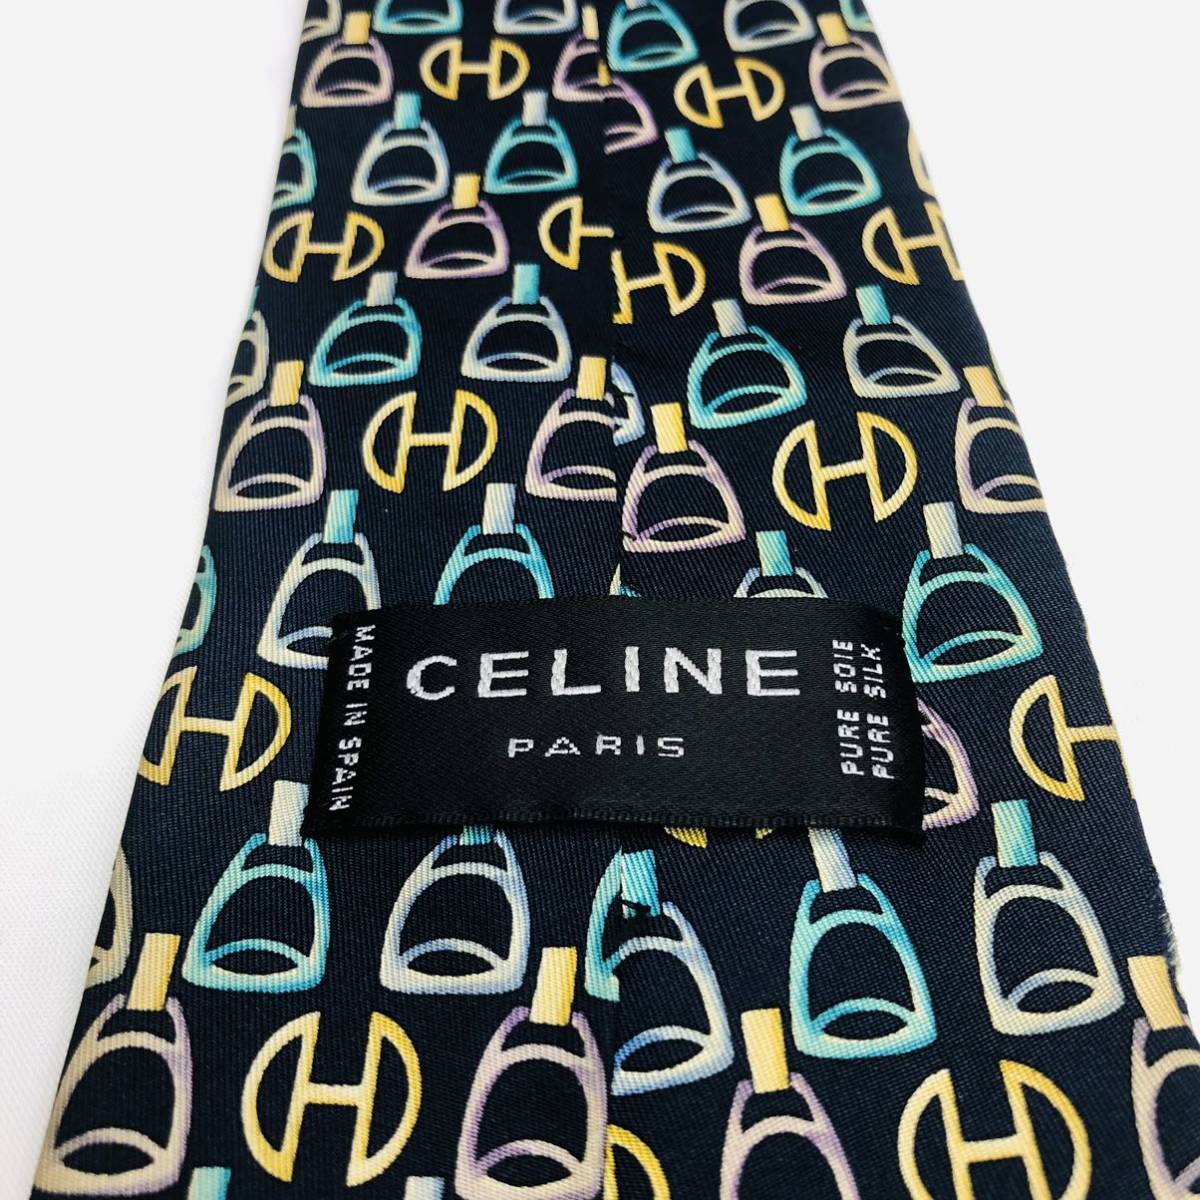 CELINE Celine necktie high brand dark gray total pattern high class silk 100%